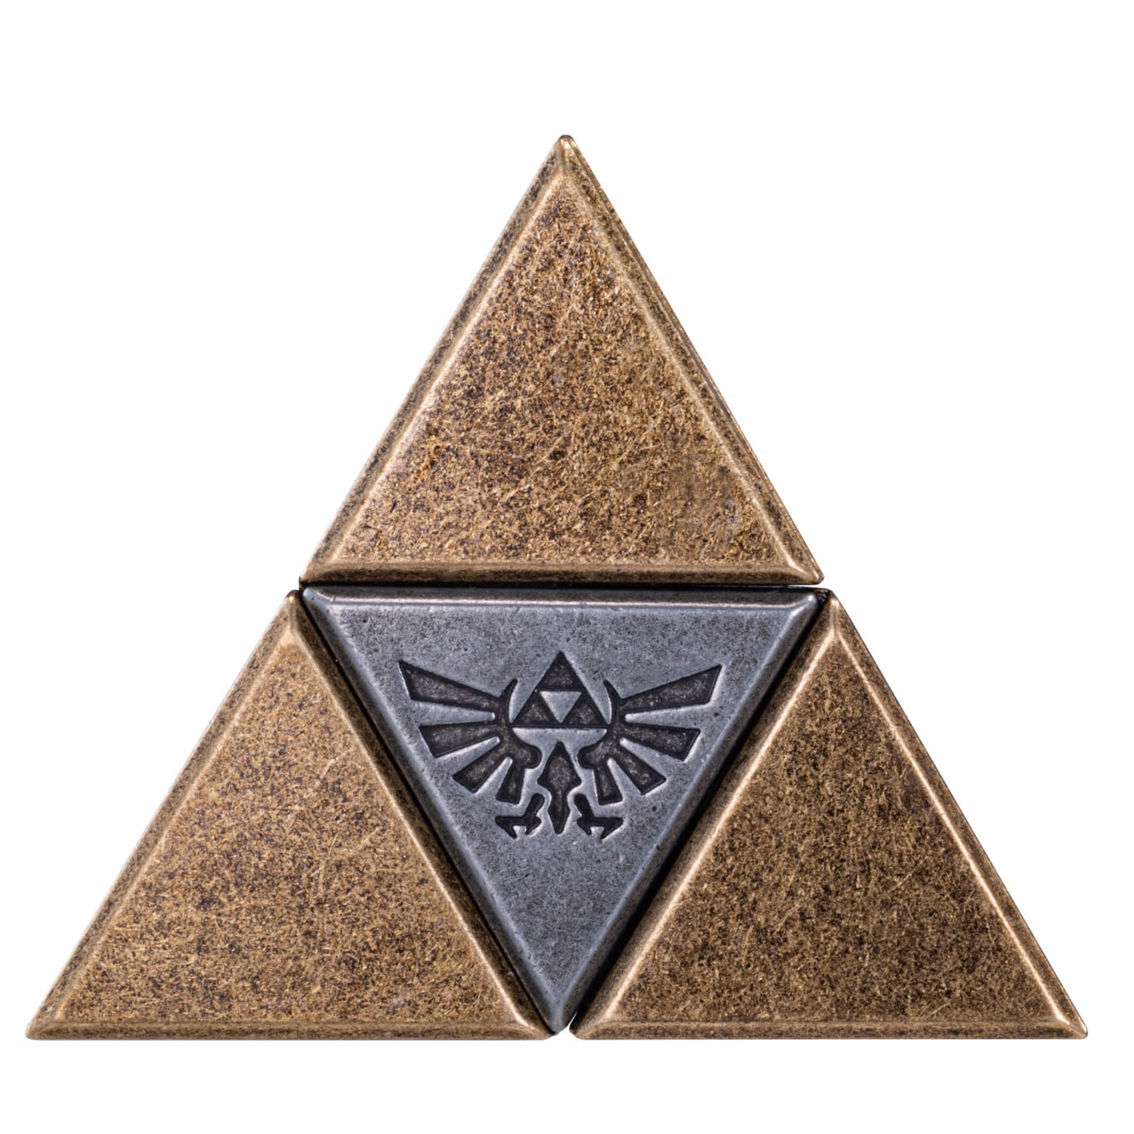 BePuzzled Hanayama Level 5 Cast Puzzle - The Legend of Zelda: The Triforce - Image 2 of 5